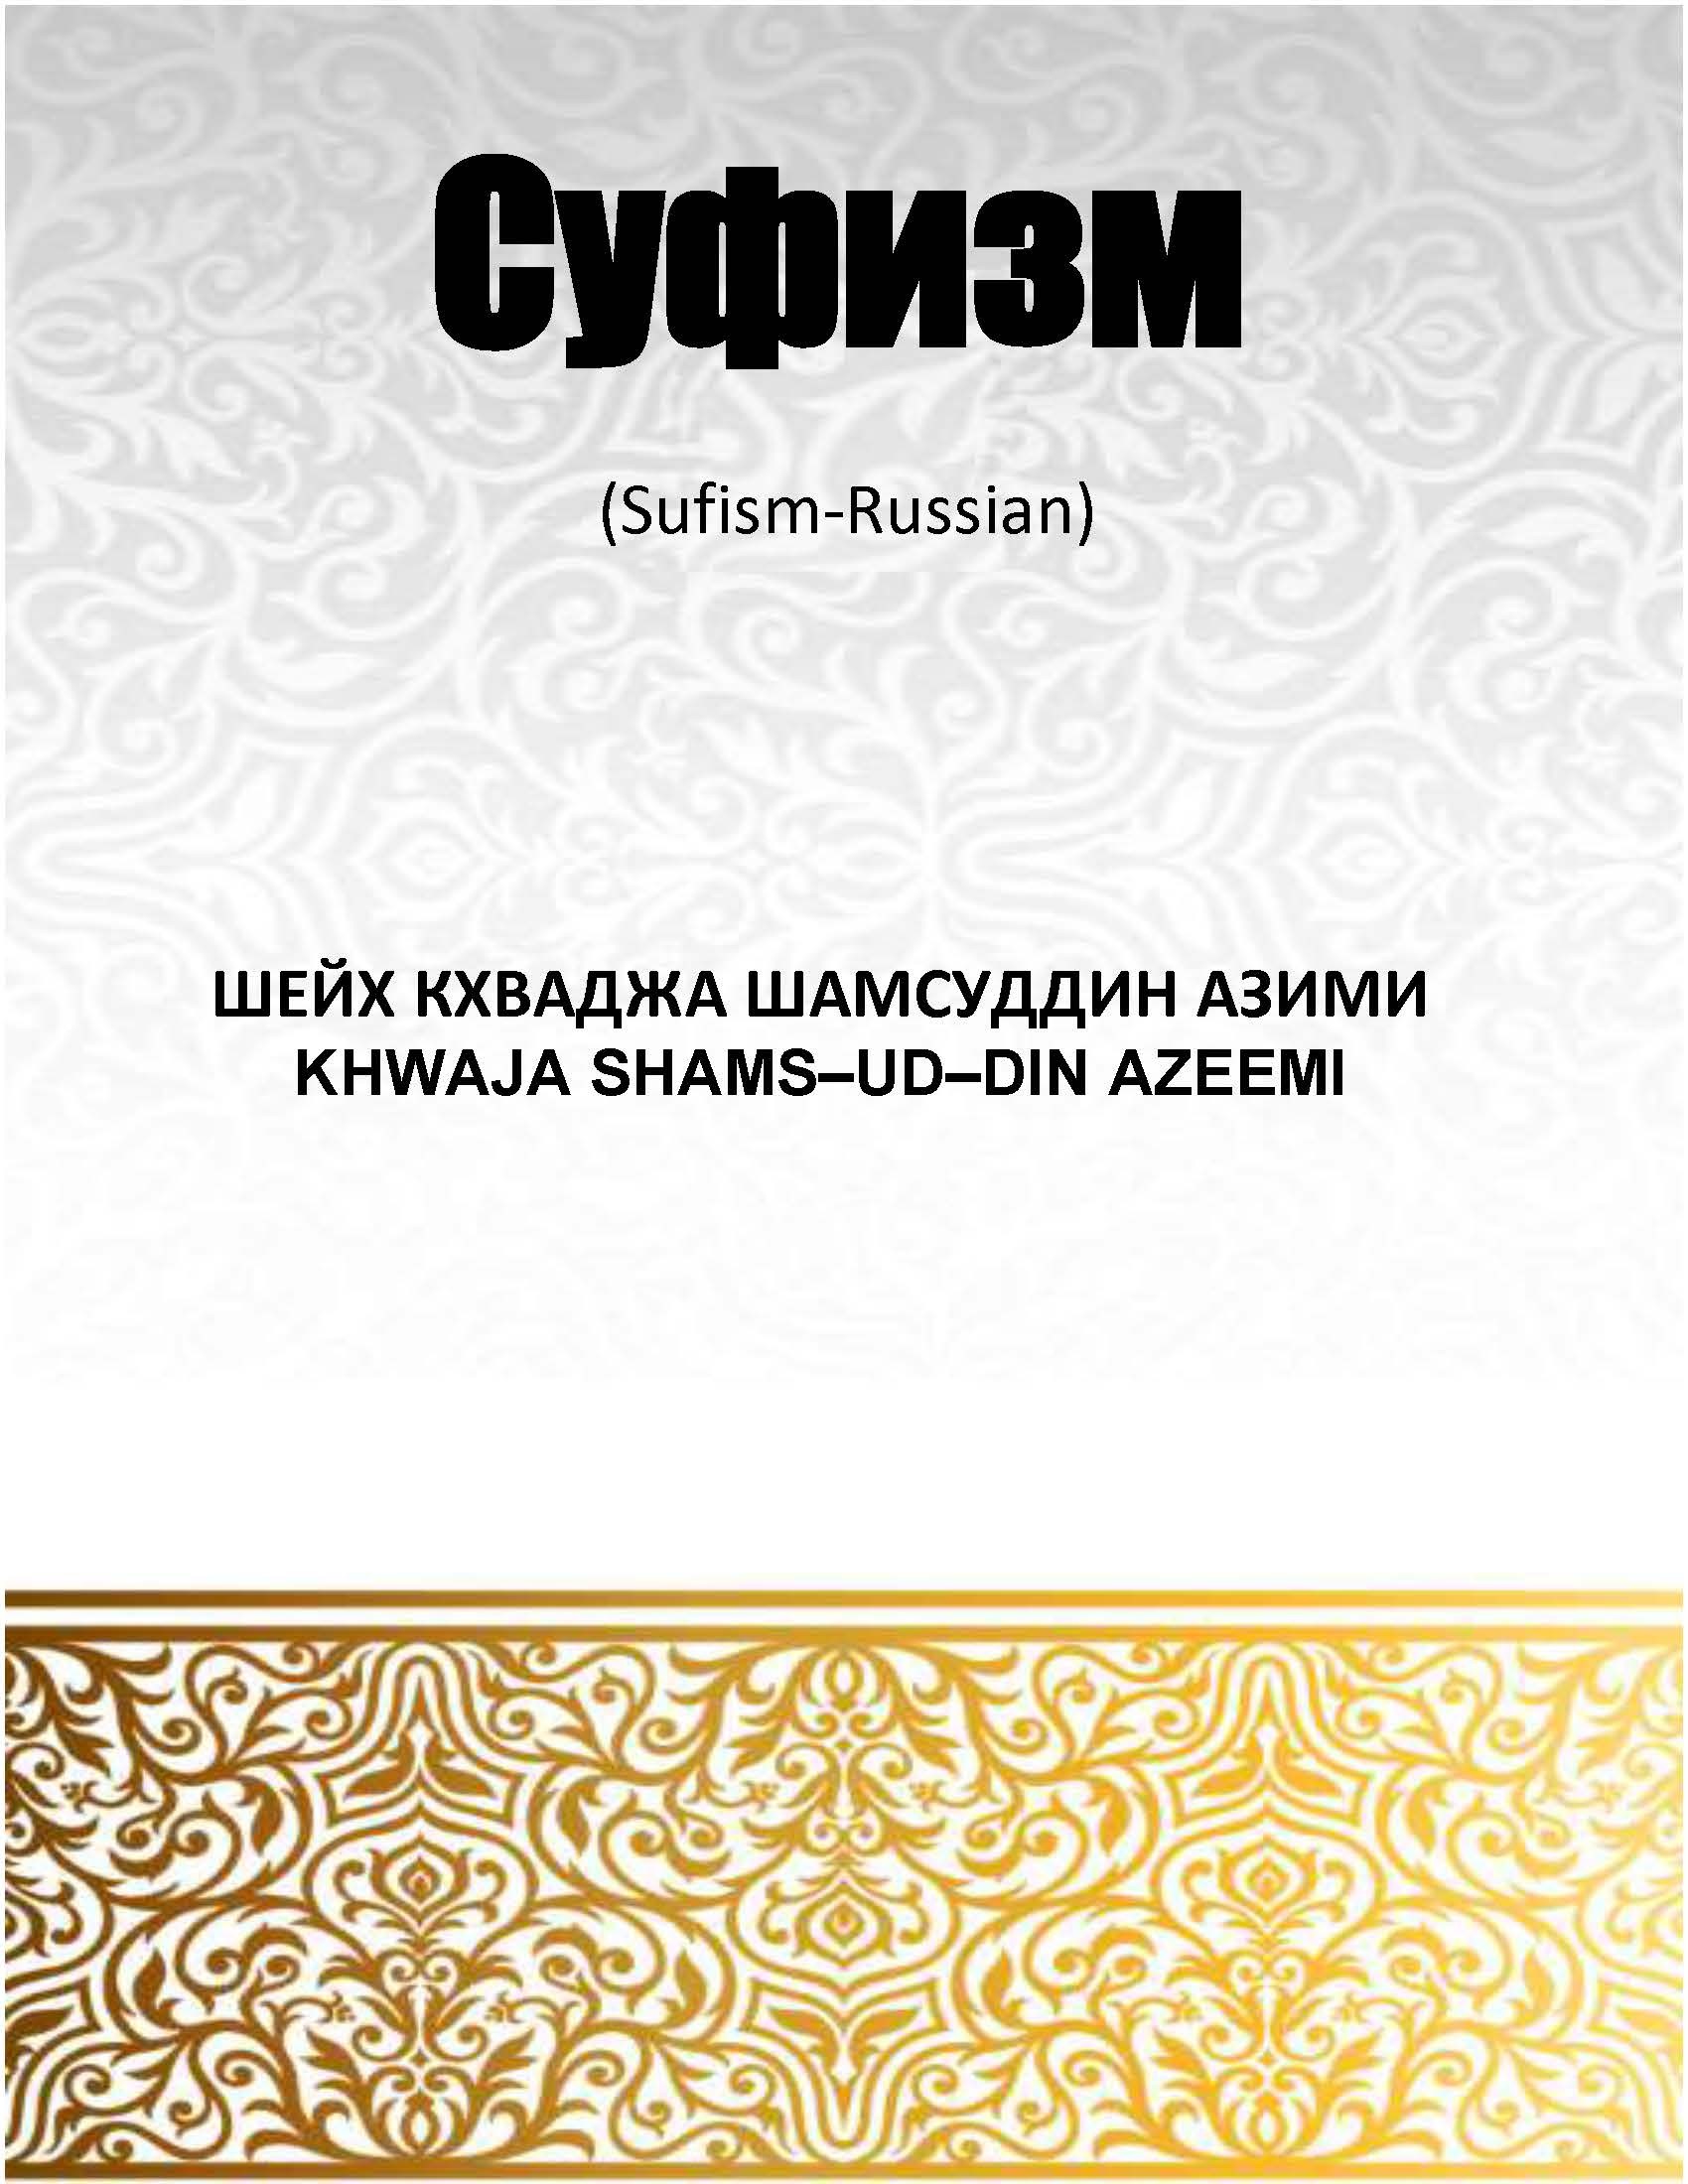 Суфизм - Sufism (Russian)